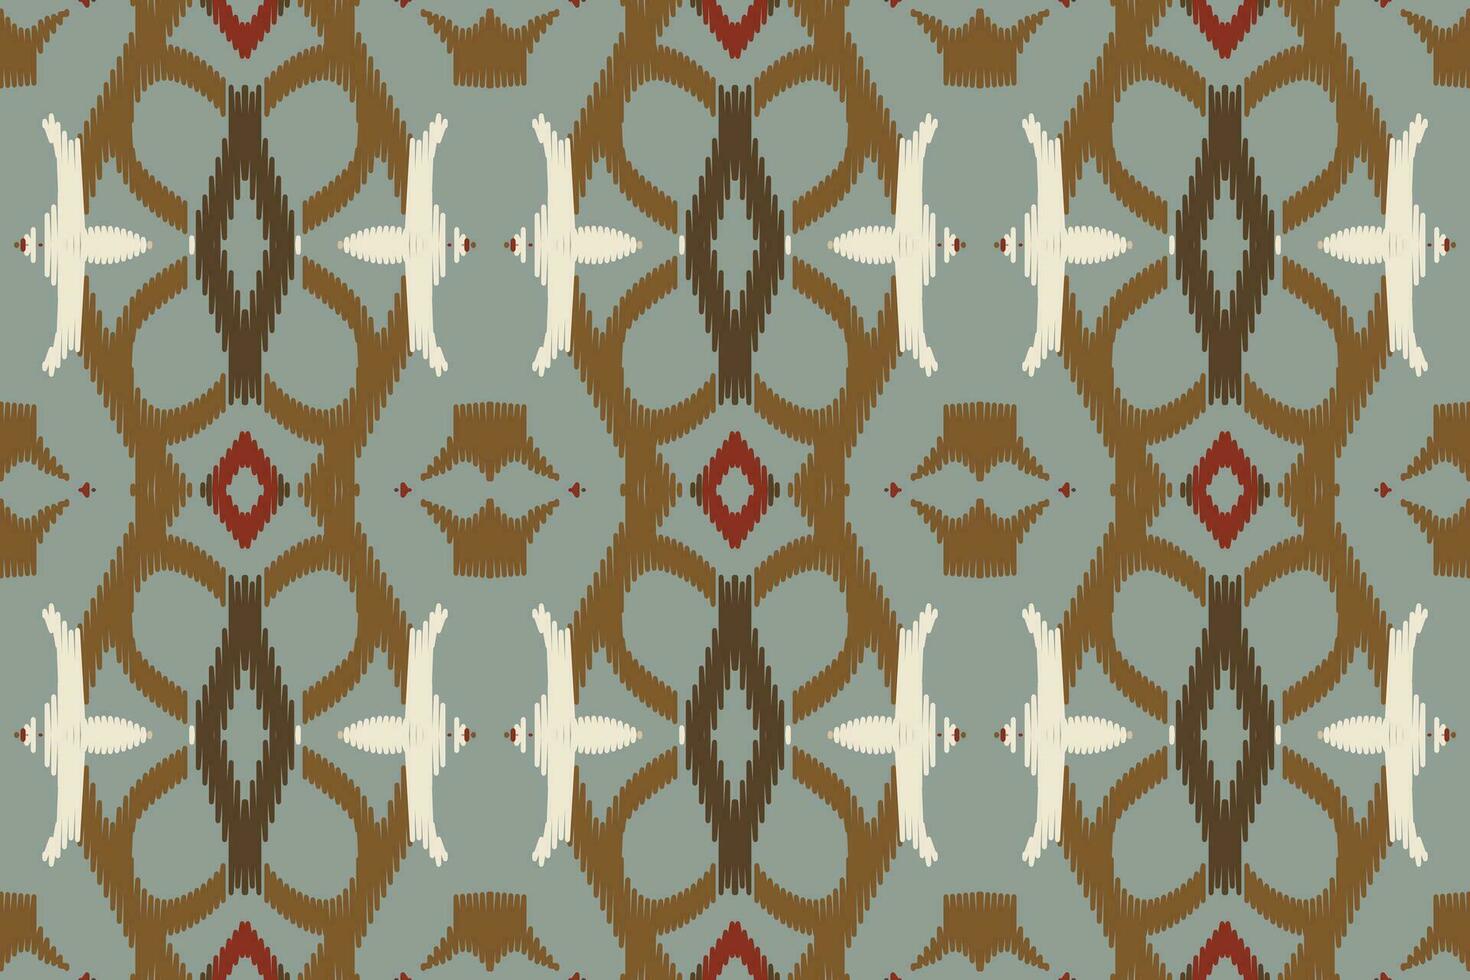 ikat paisley mönster broderi bakgrund. ikat textur geometrisk etnisk orientalisk mönster traditionell.aztec stil abstrakt vektor illustration.design för textur, tyg, kläder, inslagning, sarong.